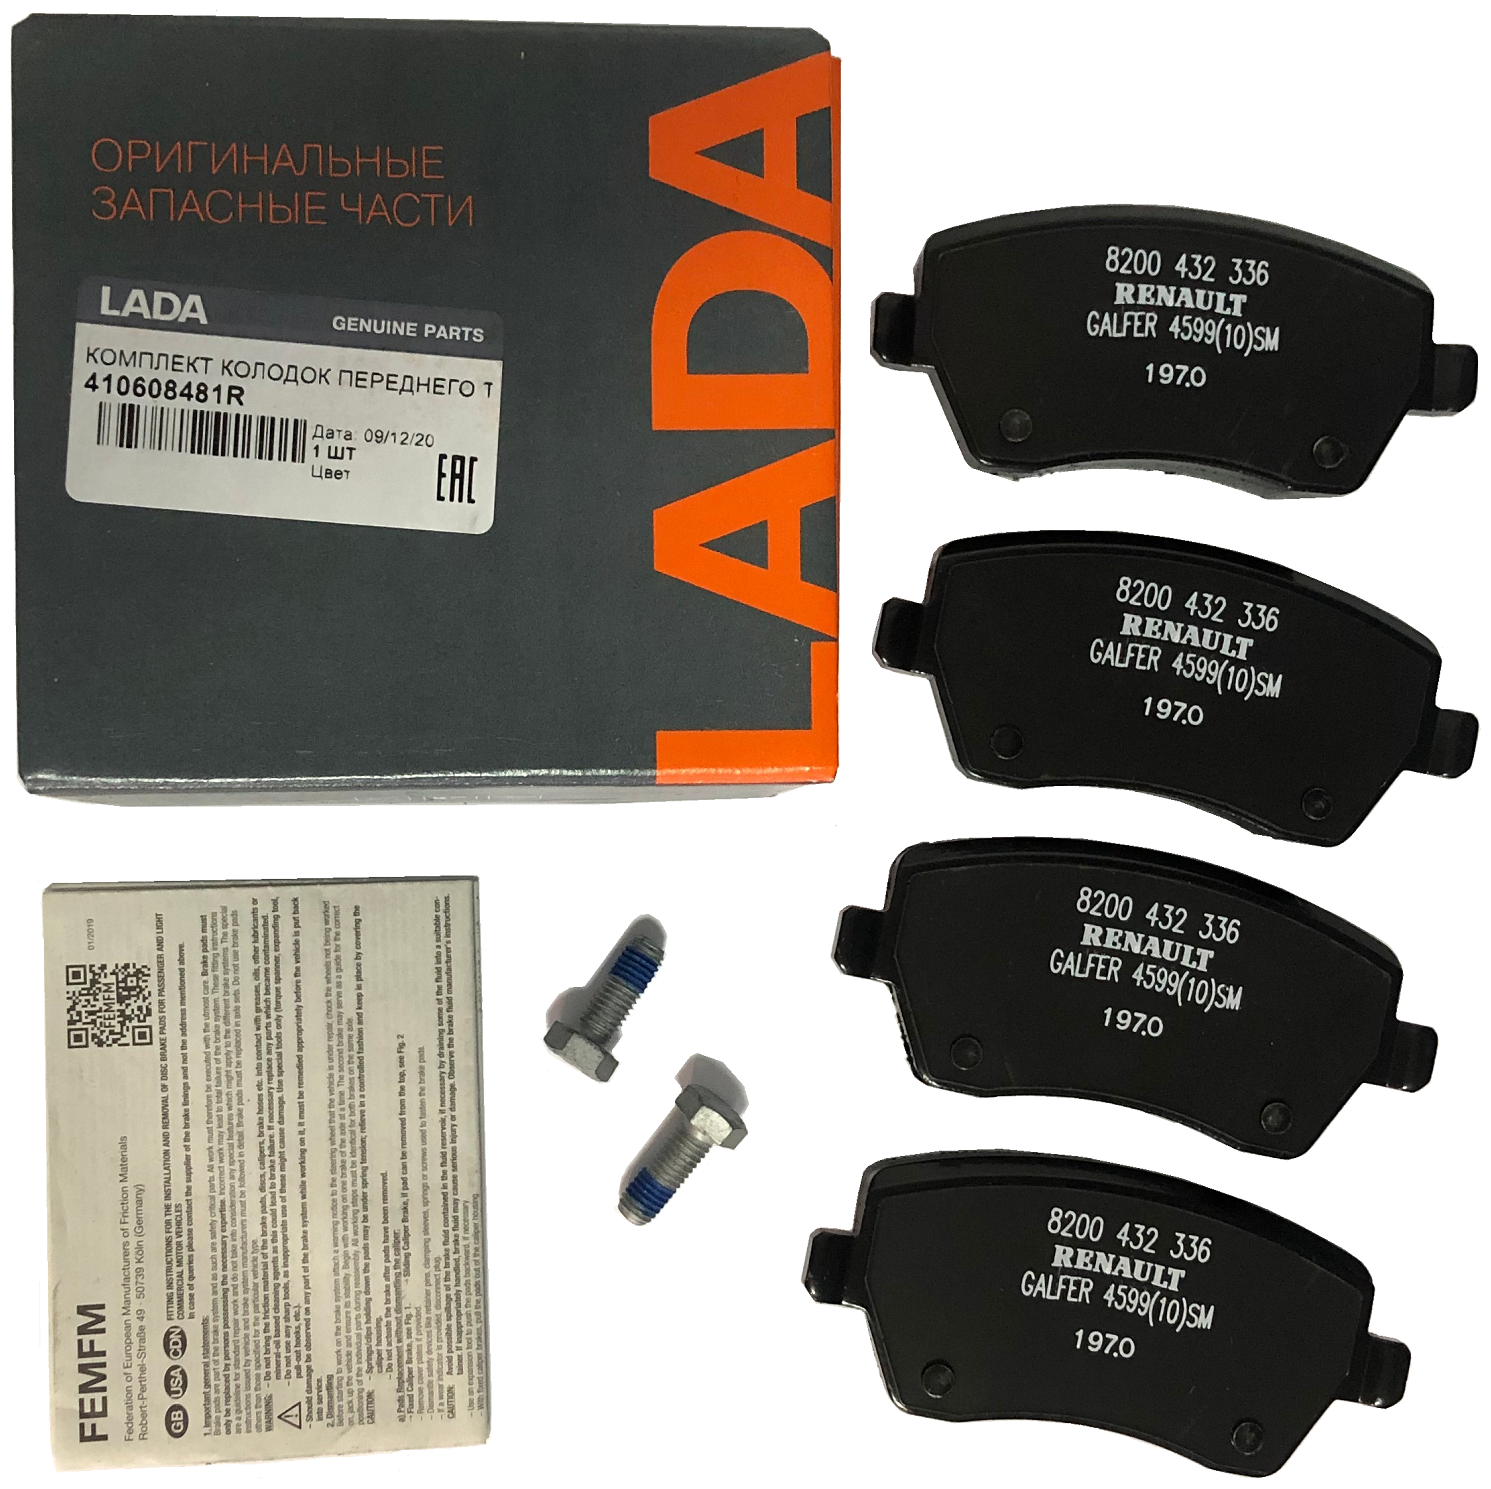 Колодки тормозные передние LADA, Ларгус, Vesta (комплект - 4 шт.), арт. 410608481R